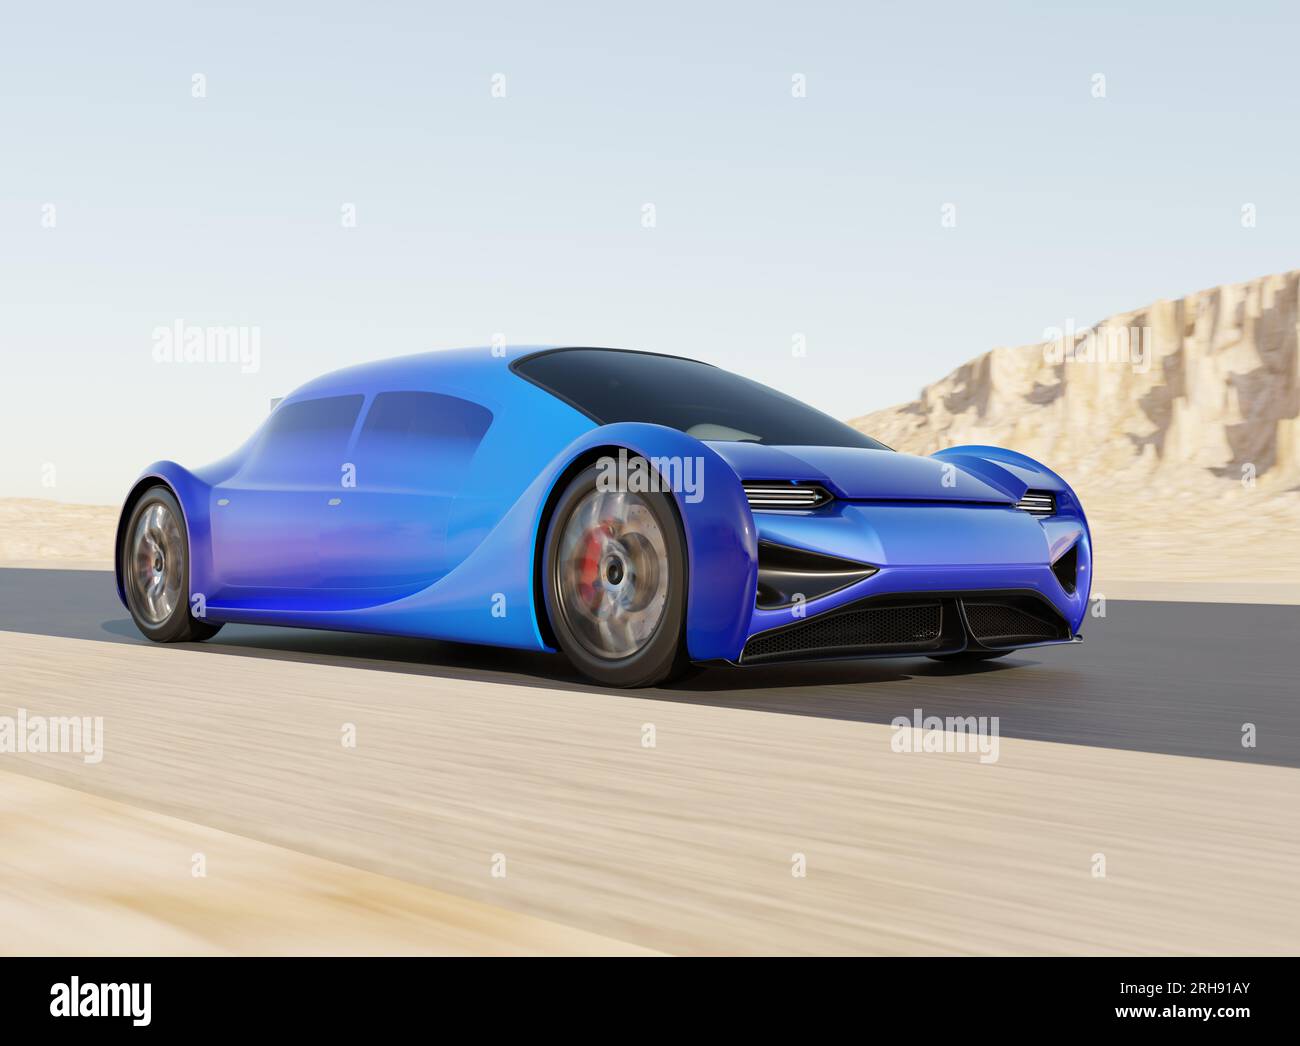 Voiture électrique bleue futuriste conduisant sur la route avec fond de désert. Conception générique, image de rendu 3D. Banque D'Images